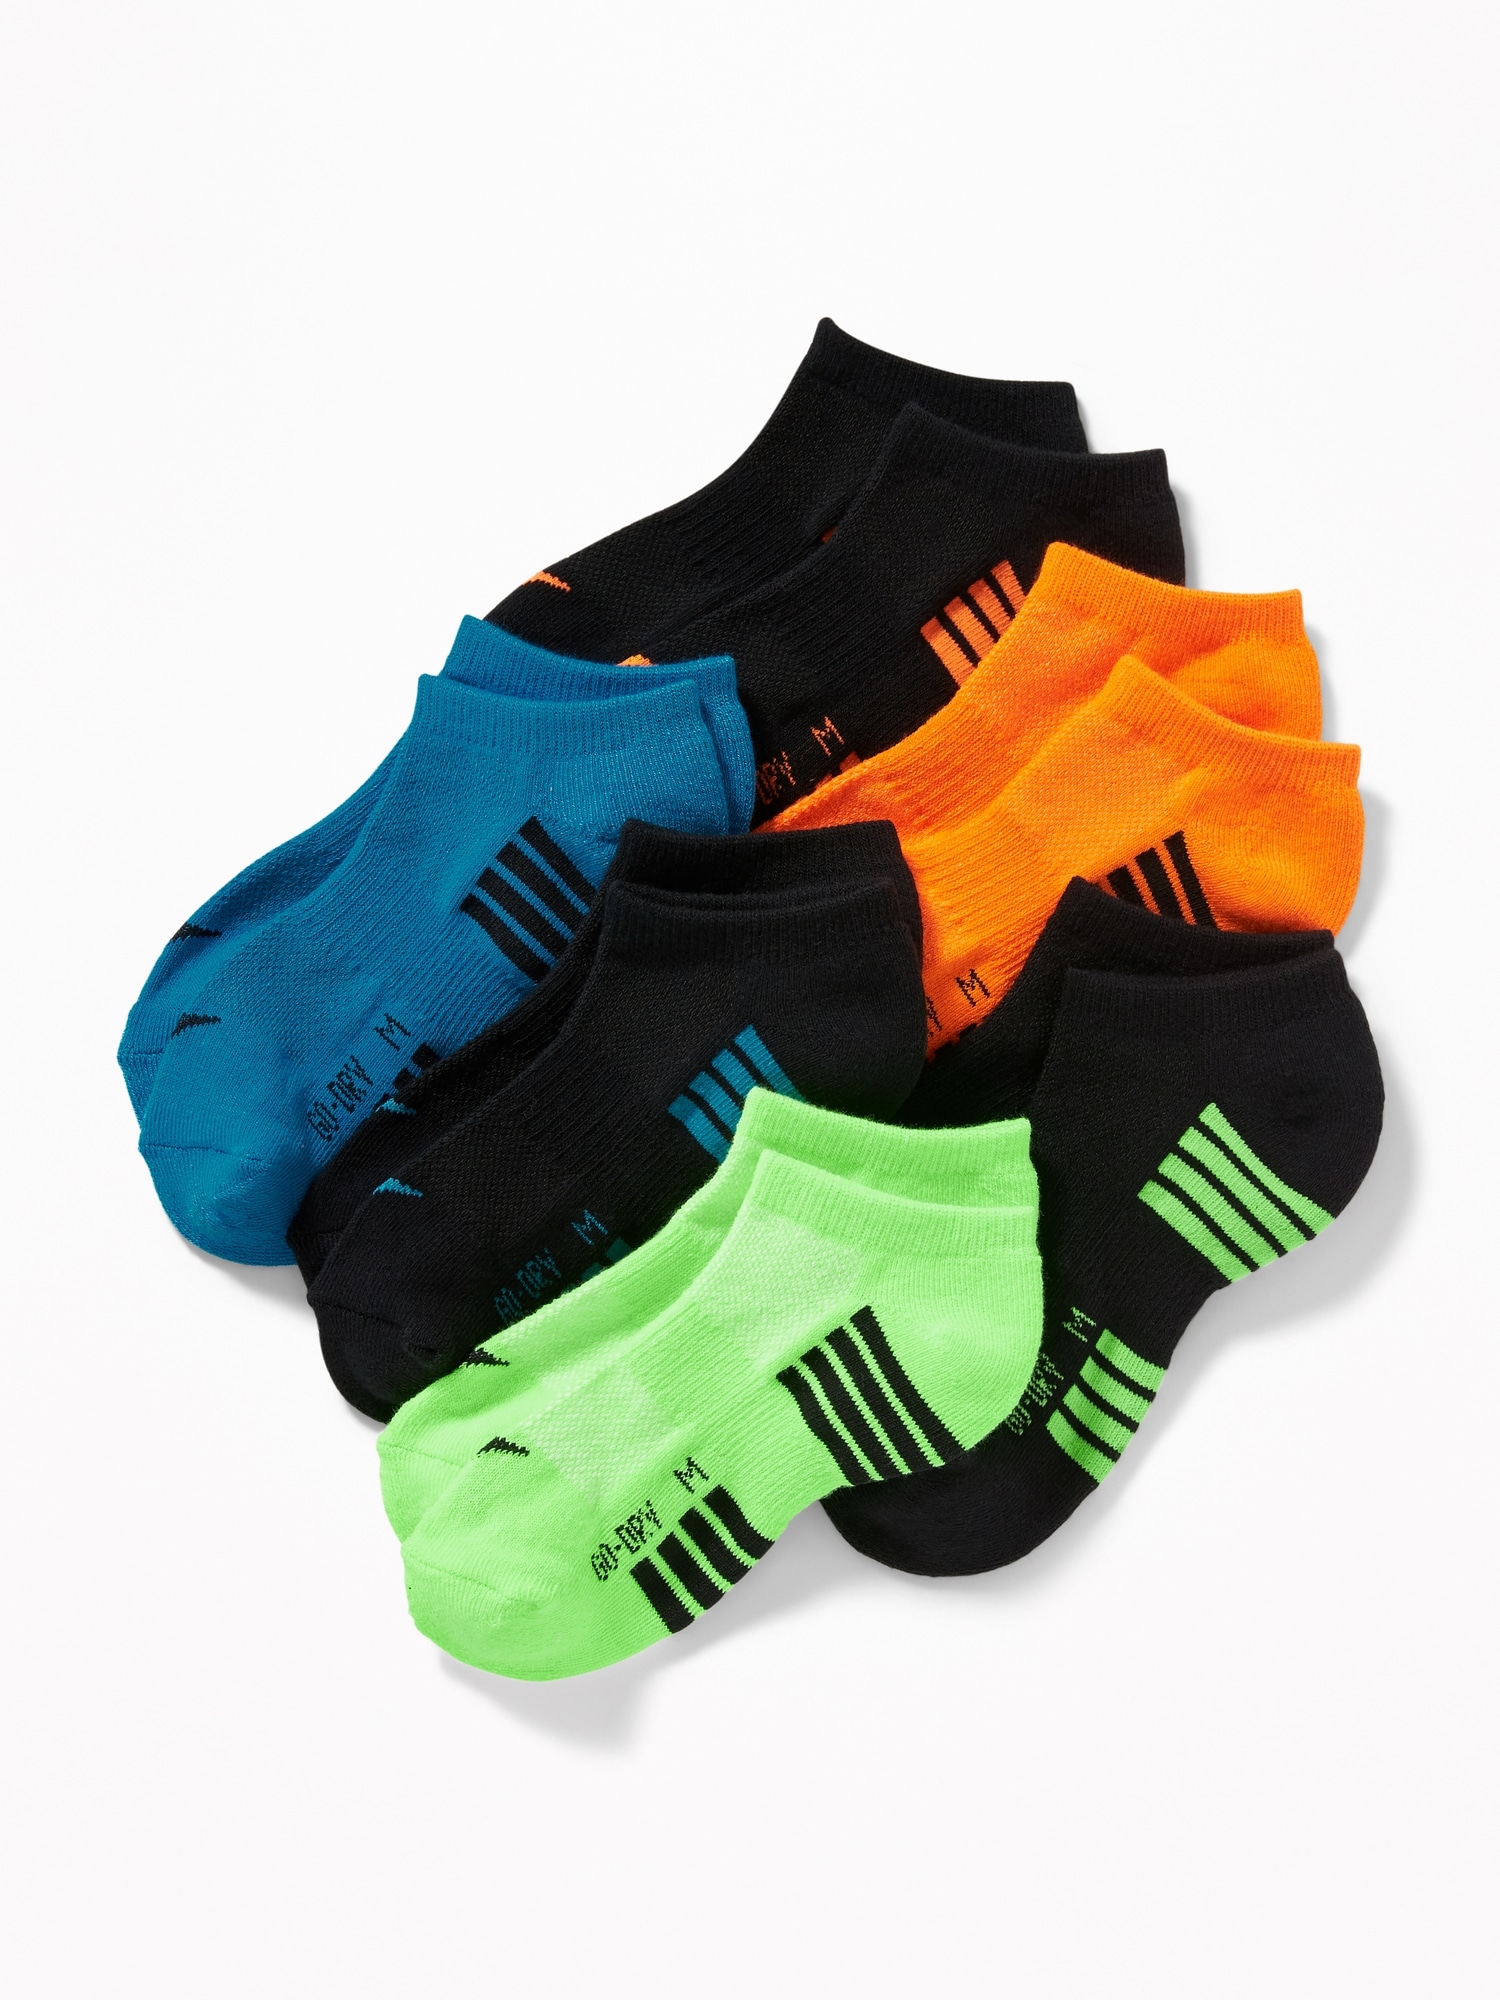 Old Navy Go-Dry Ankle Socks 6-Pack for Boys orange. 1